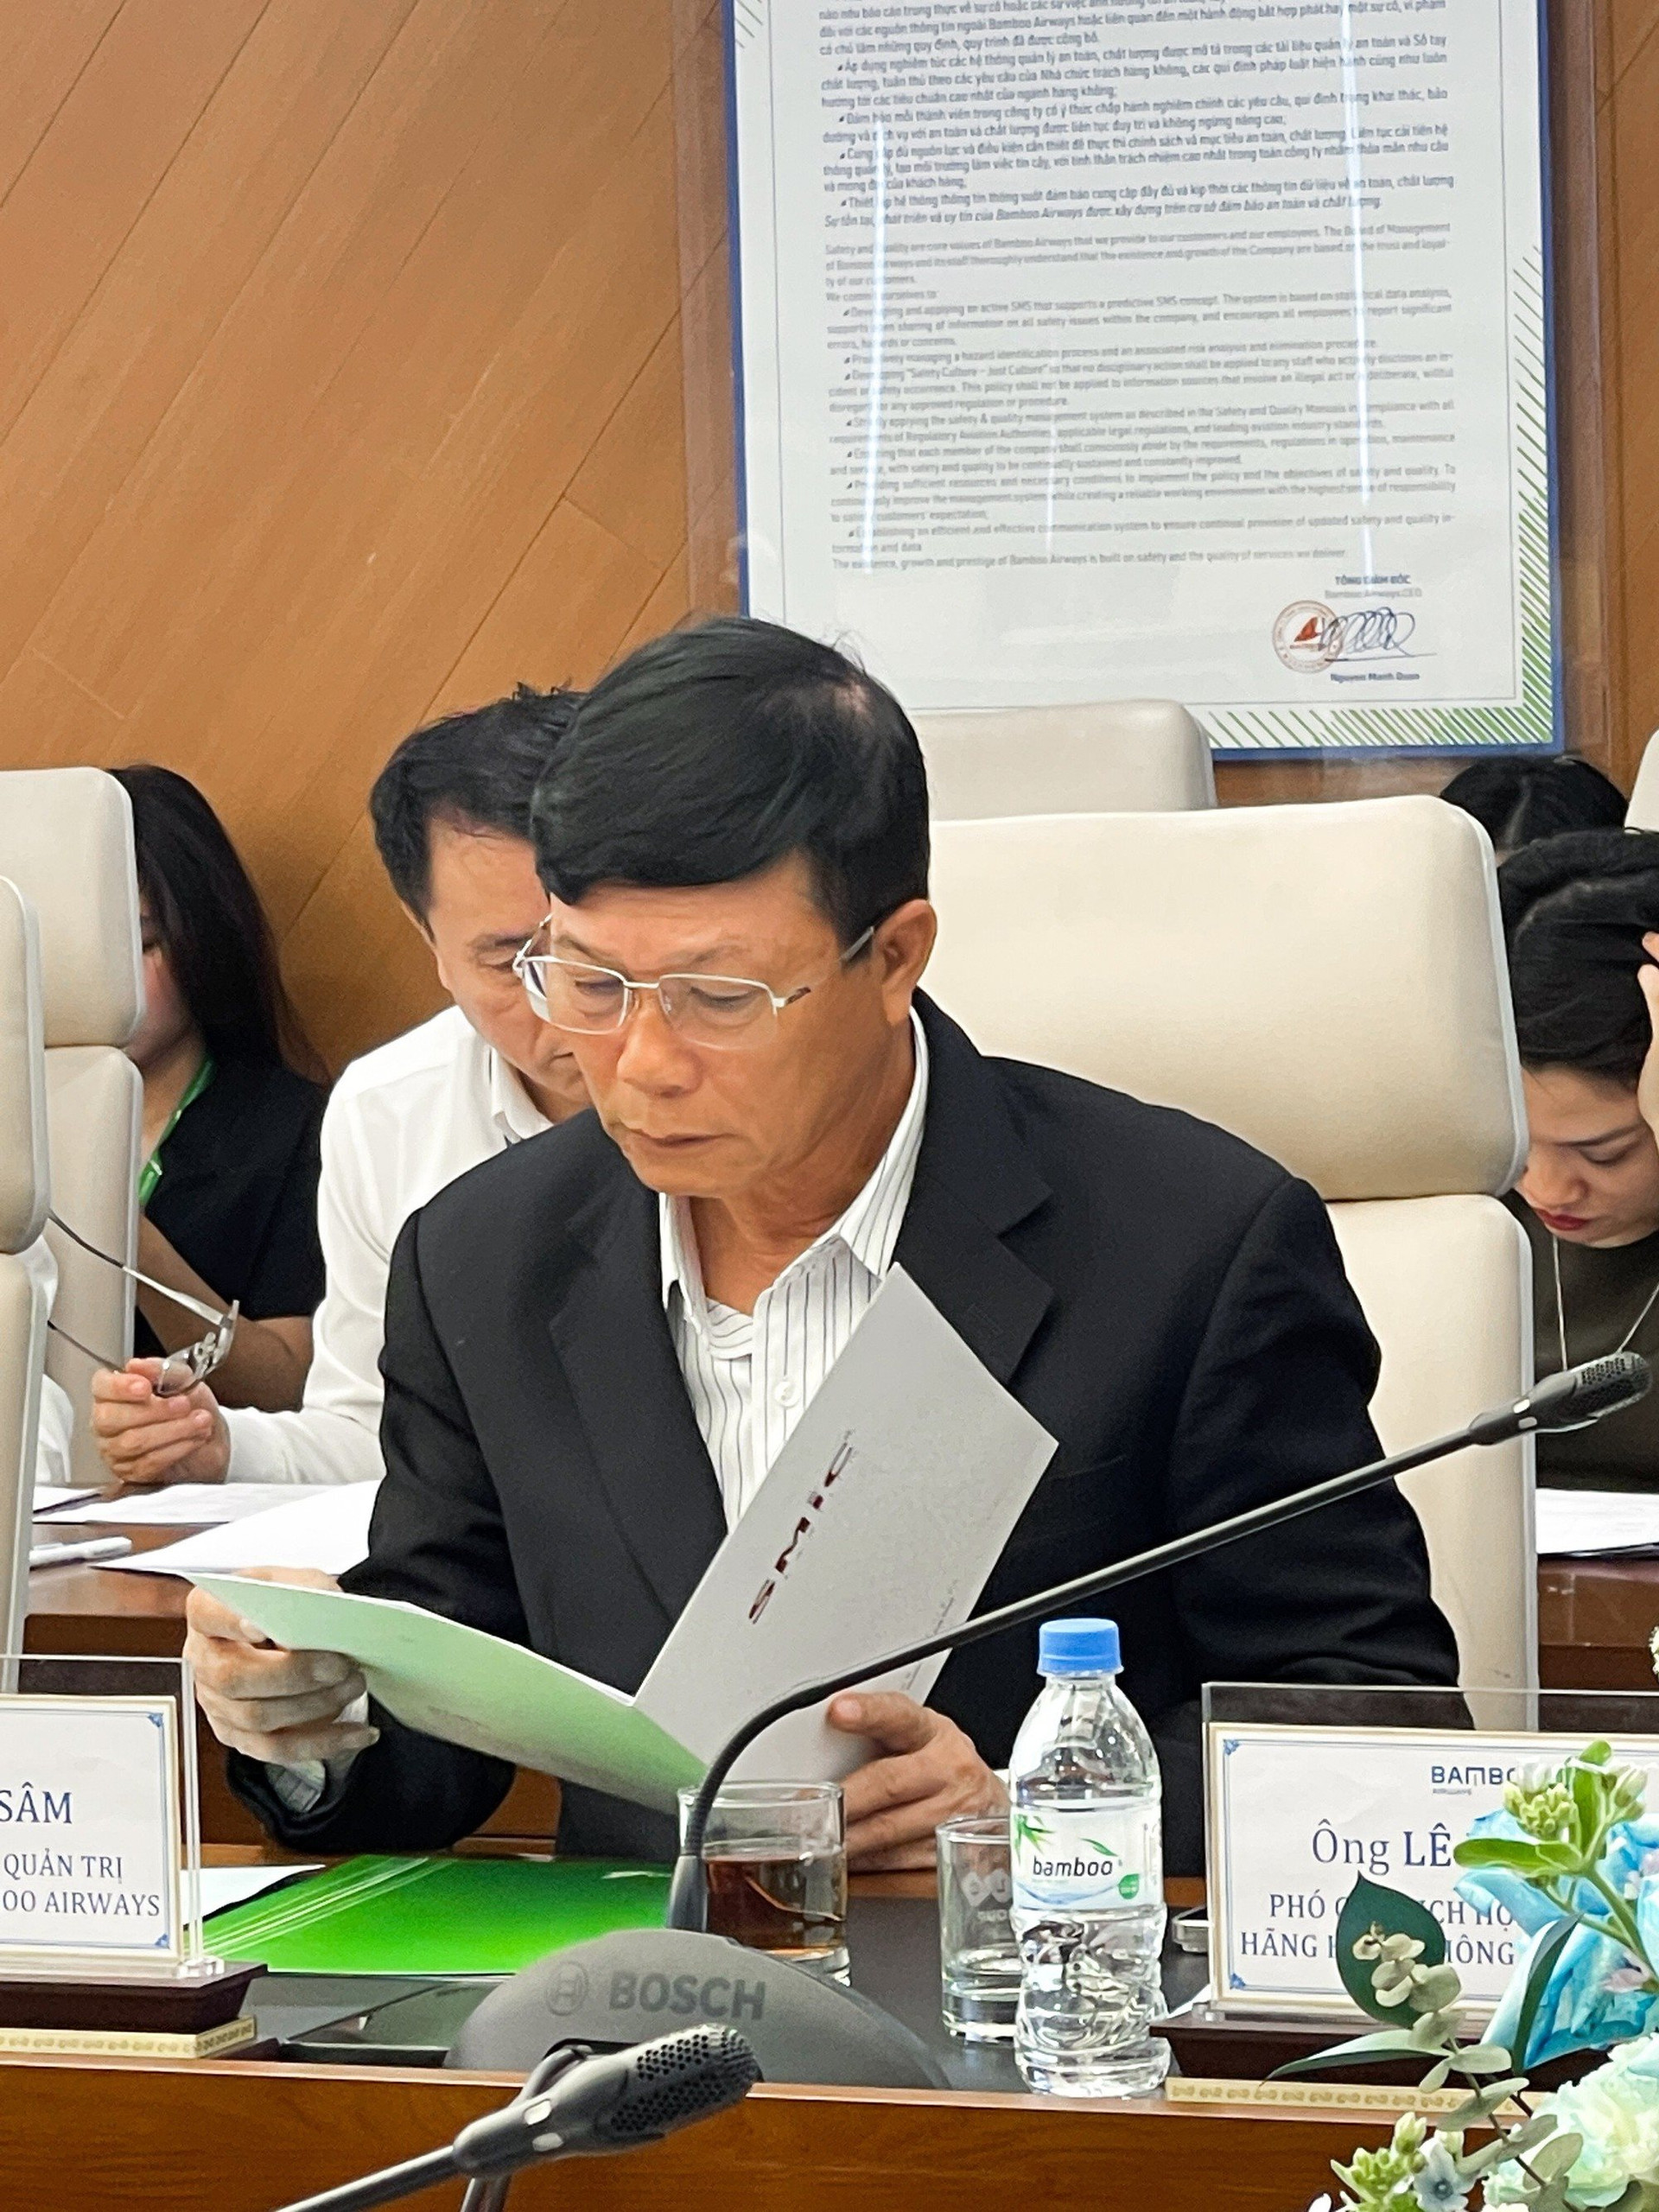 Chủ tịch Bamboo Airways Lê Thái Sâm rời chức tại FLC, Hội đồng quản trị FLC còn những ai? - Ảnh 2.